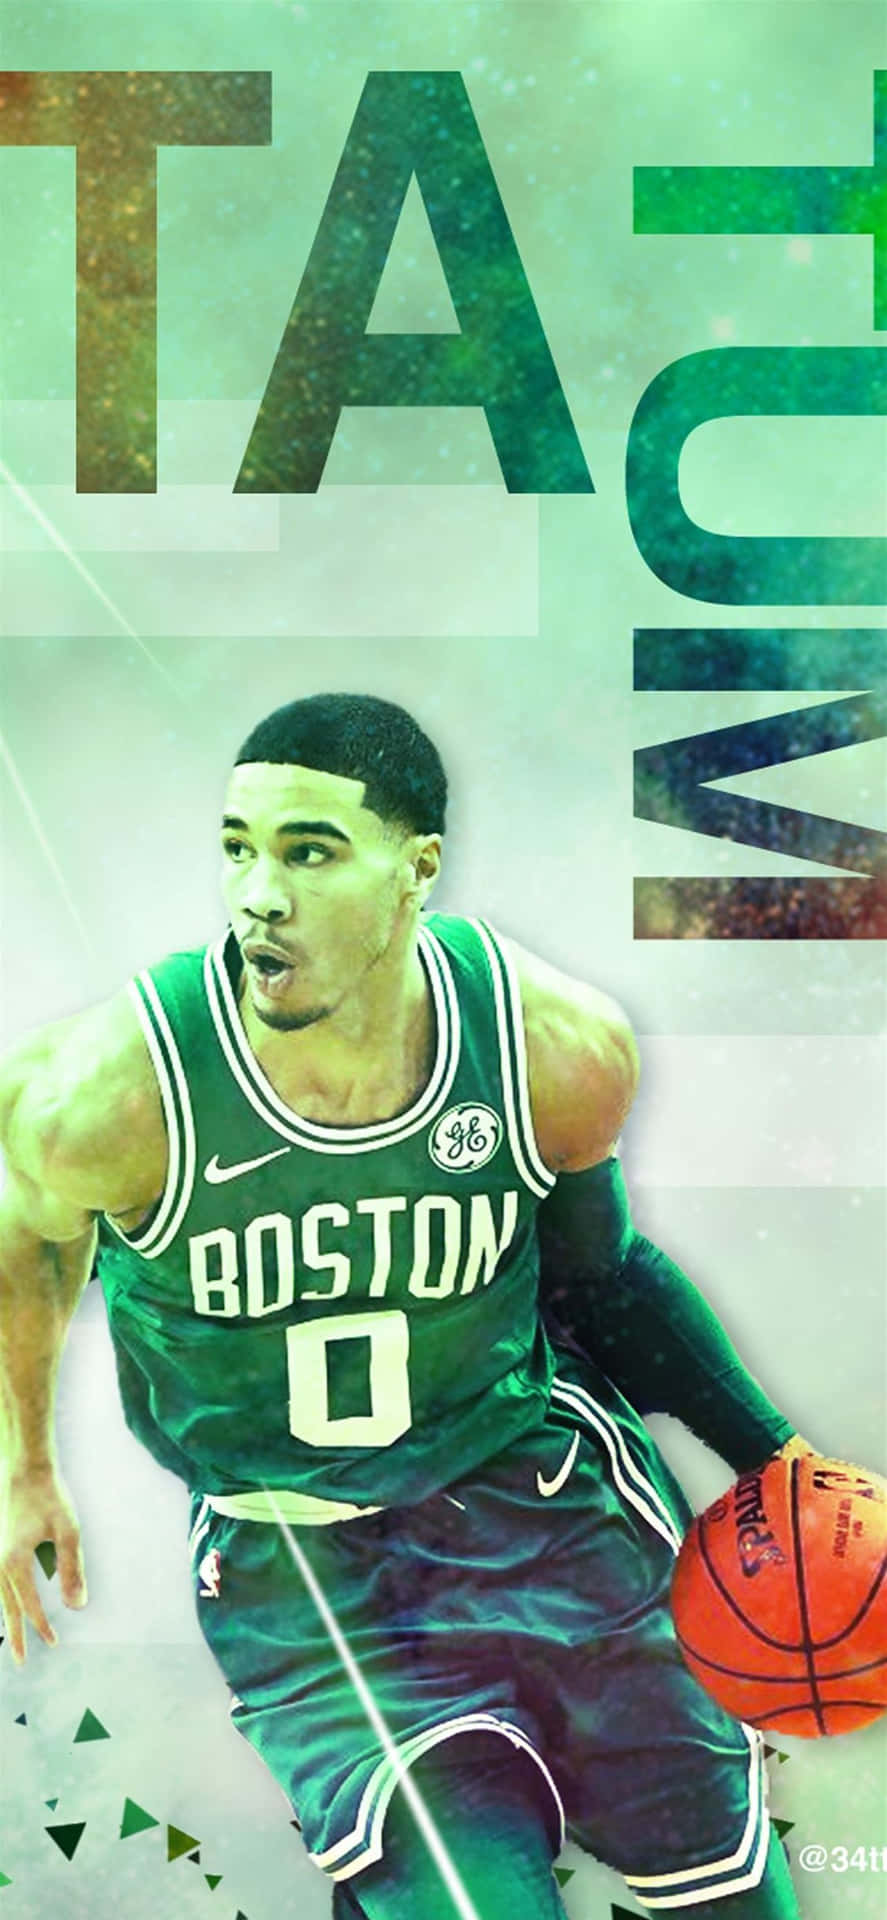 The Boston Celtics Ready to Make History